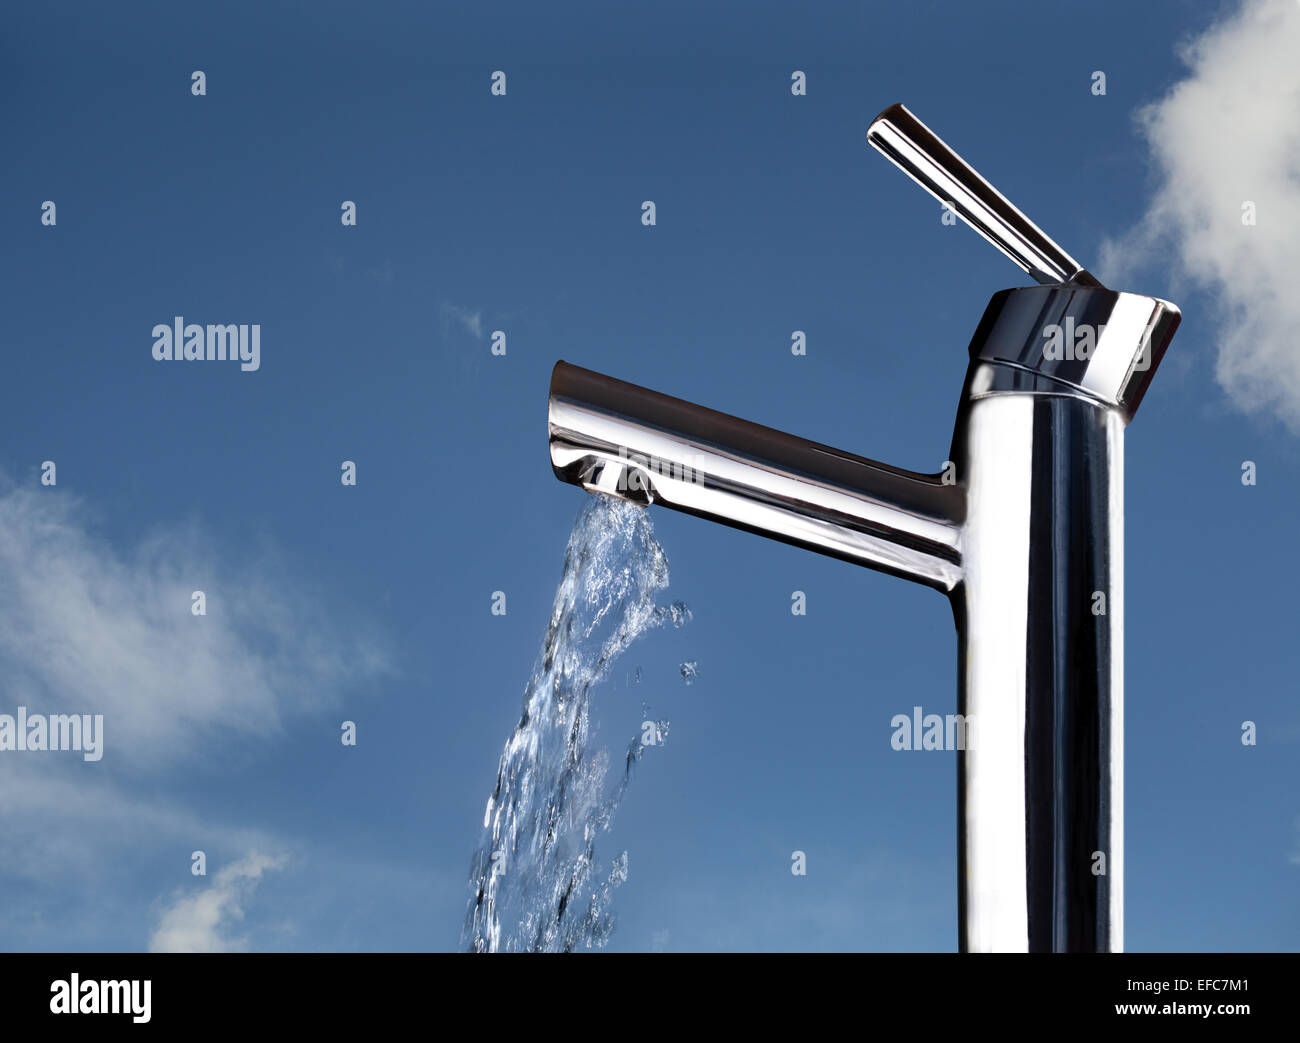 Un robinet avec de l'eau tournant, montré contre un ciel obscurci légèrement bleu indiquant la fraîcheur, la pureté, le gaspillage, etc. Banque D'Images